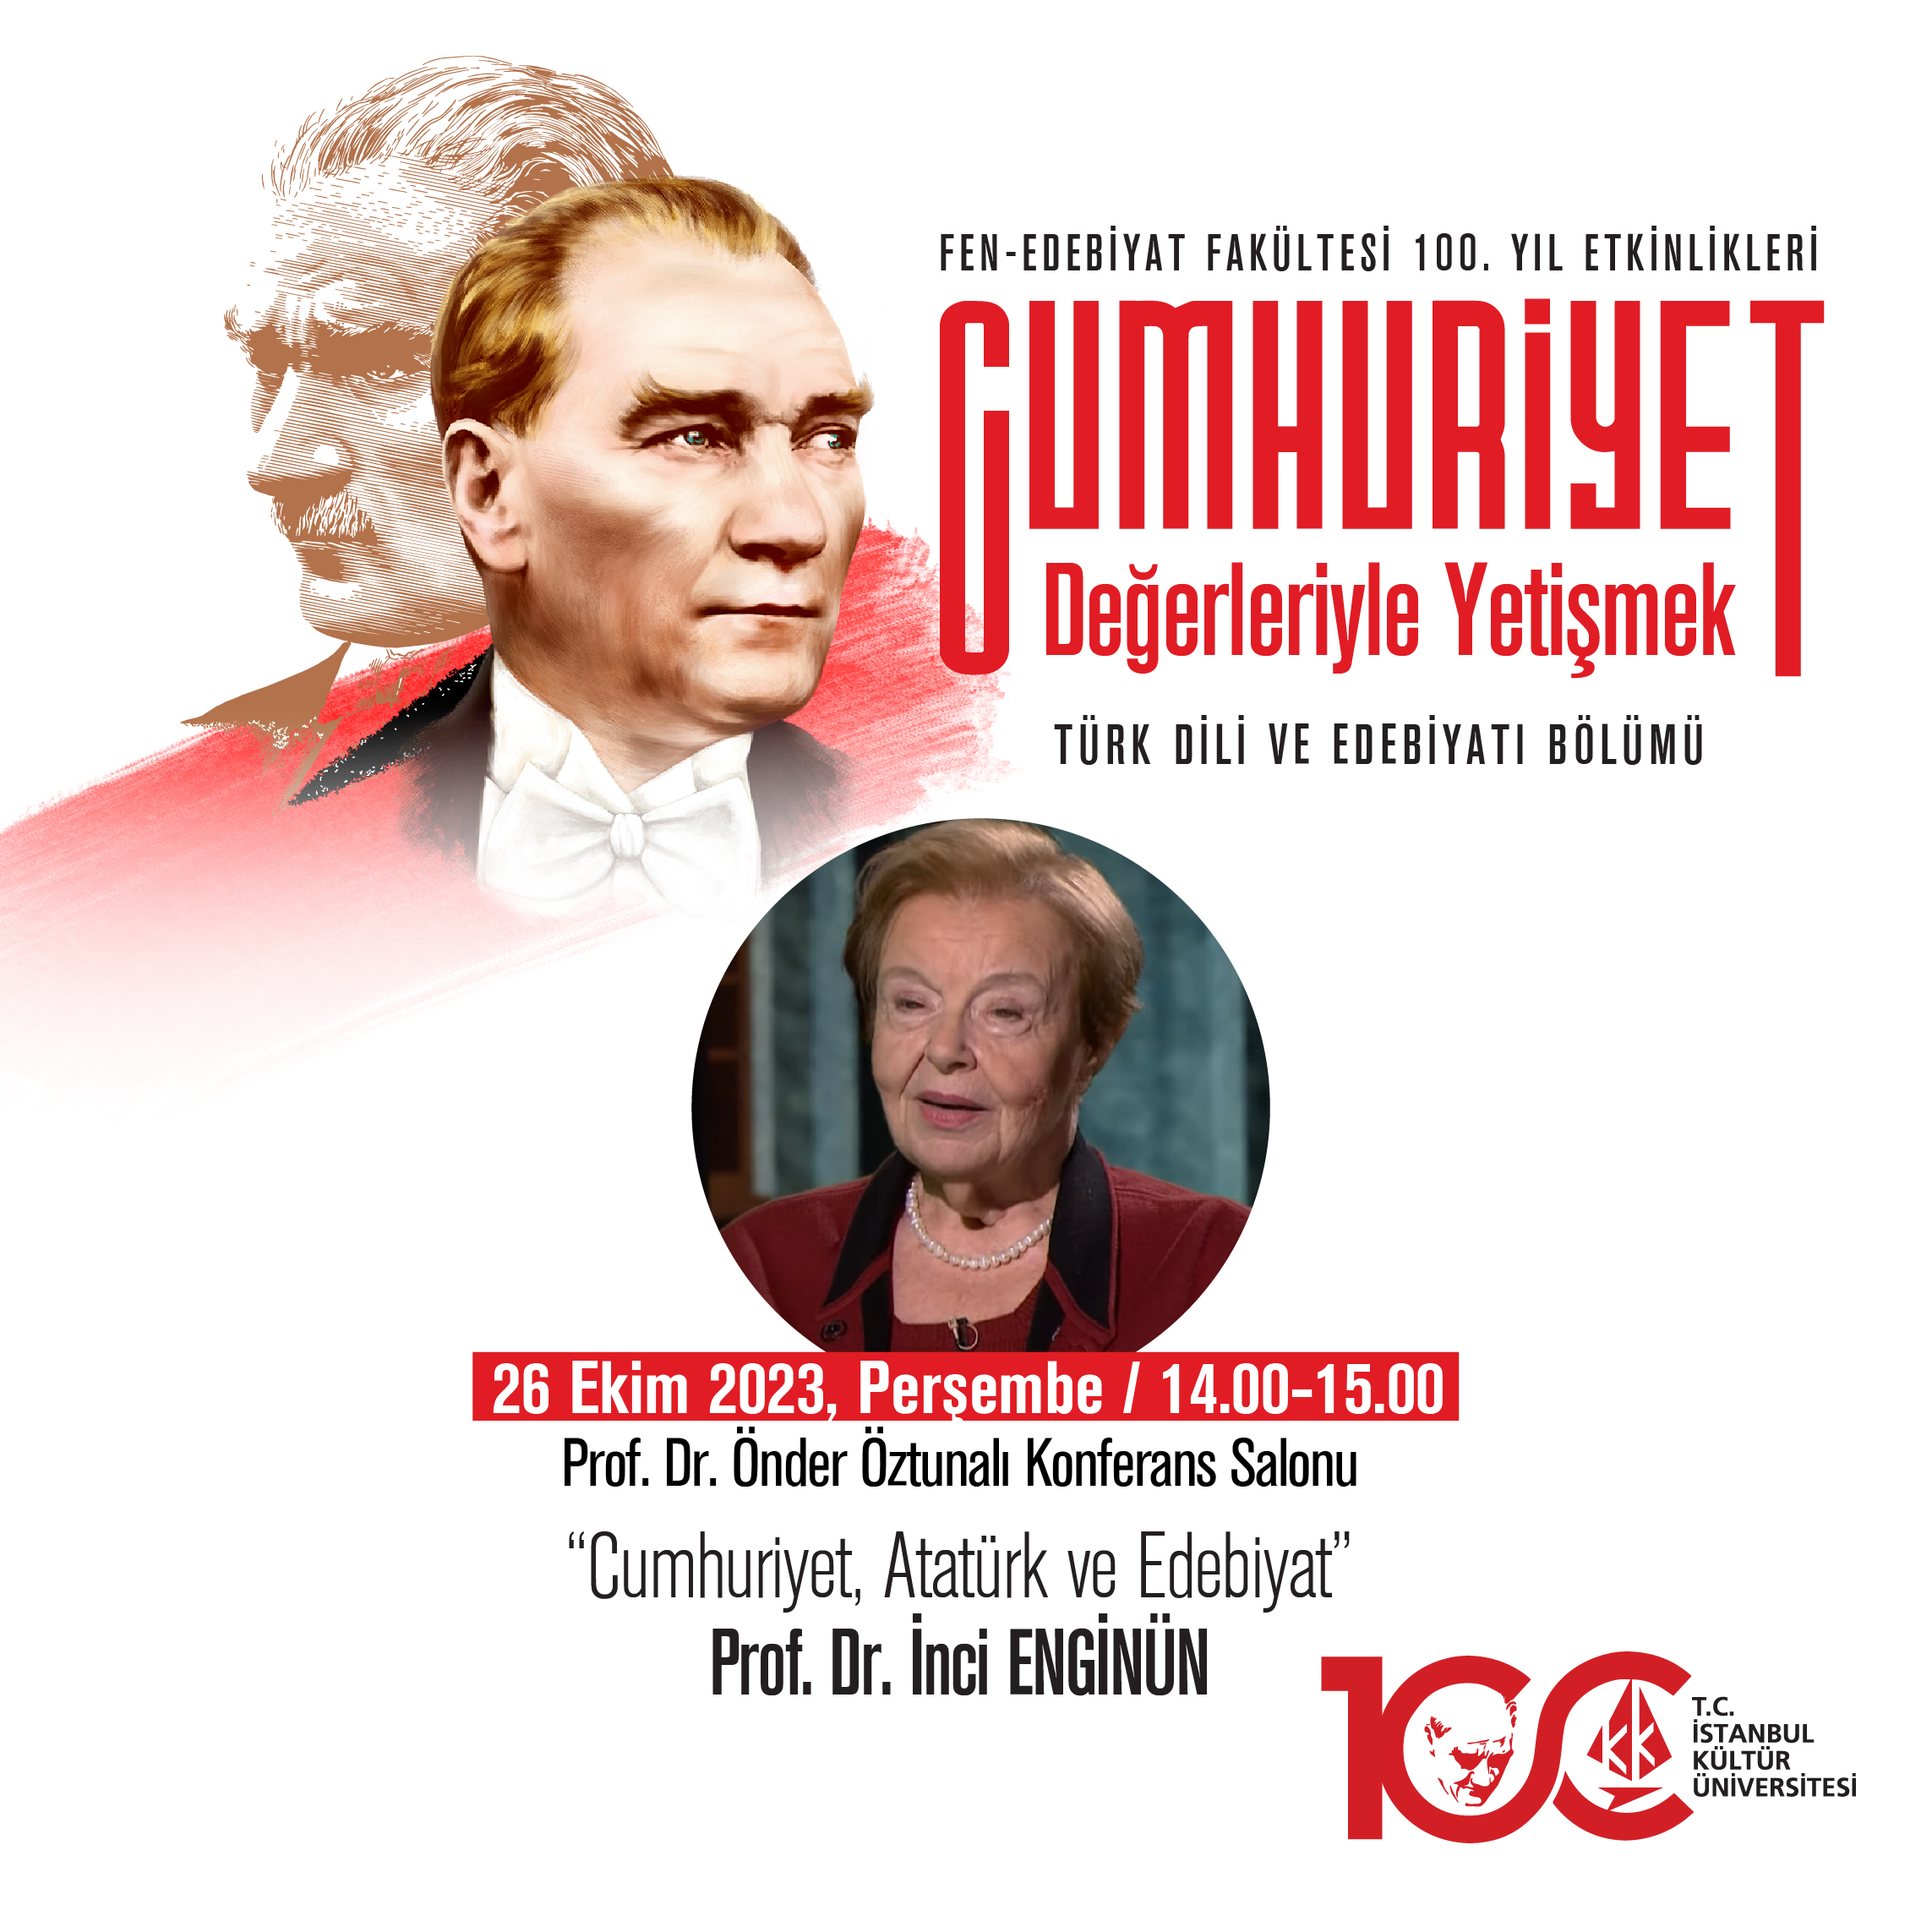 “Cumhuriyet, Atatürk ve Edebiyat”